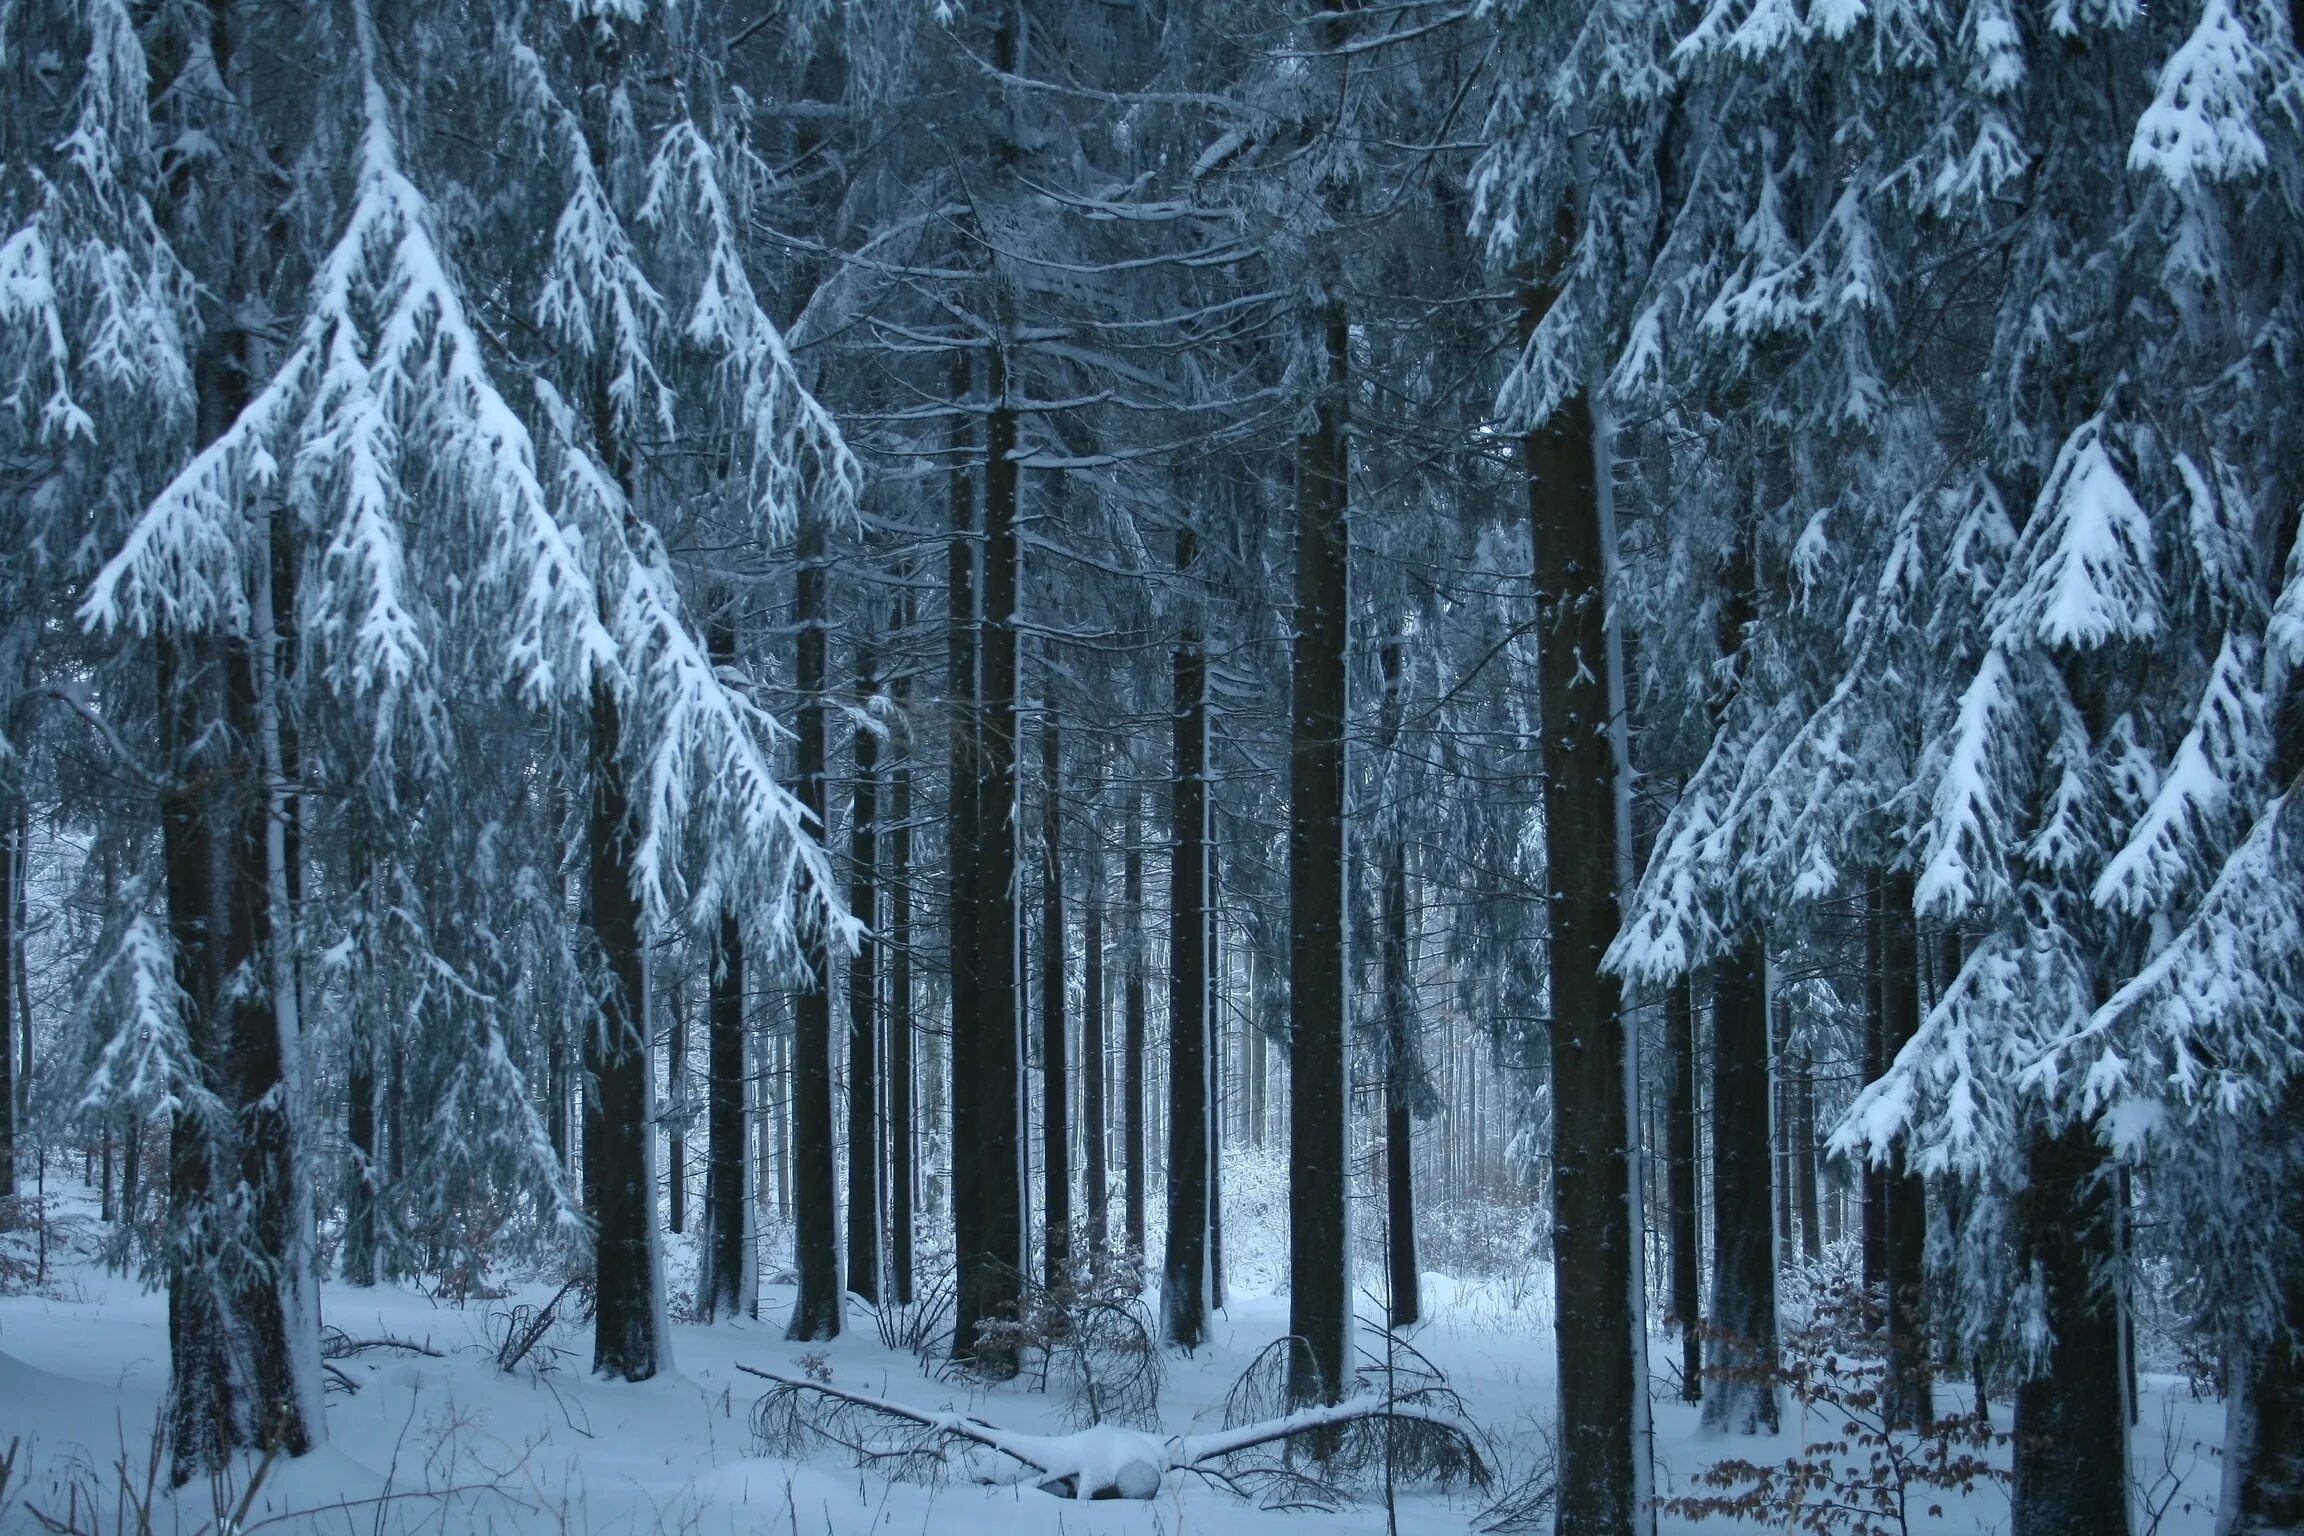 Фф и в морозном лесу я навеки. Зимний лес. Зимой в лесу. Заснеженный лес. Зимний еловый лес.